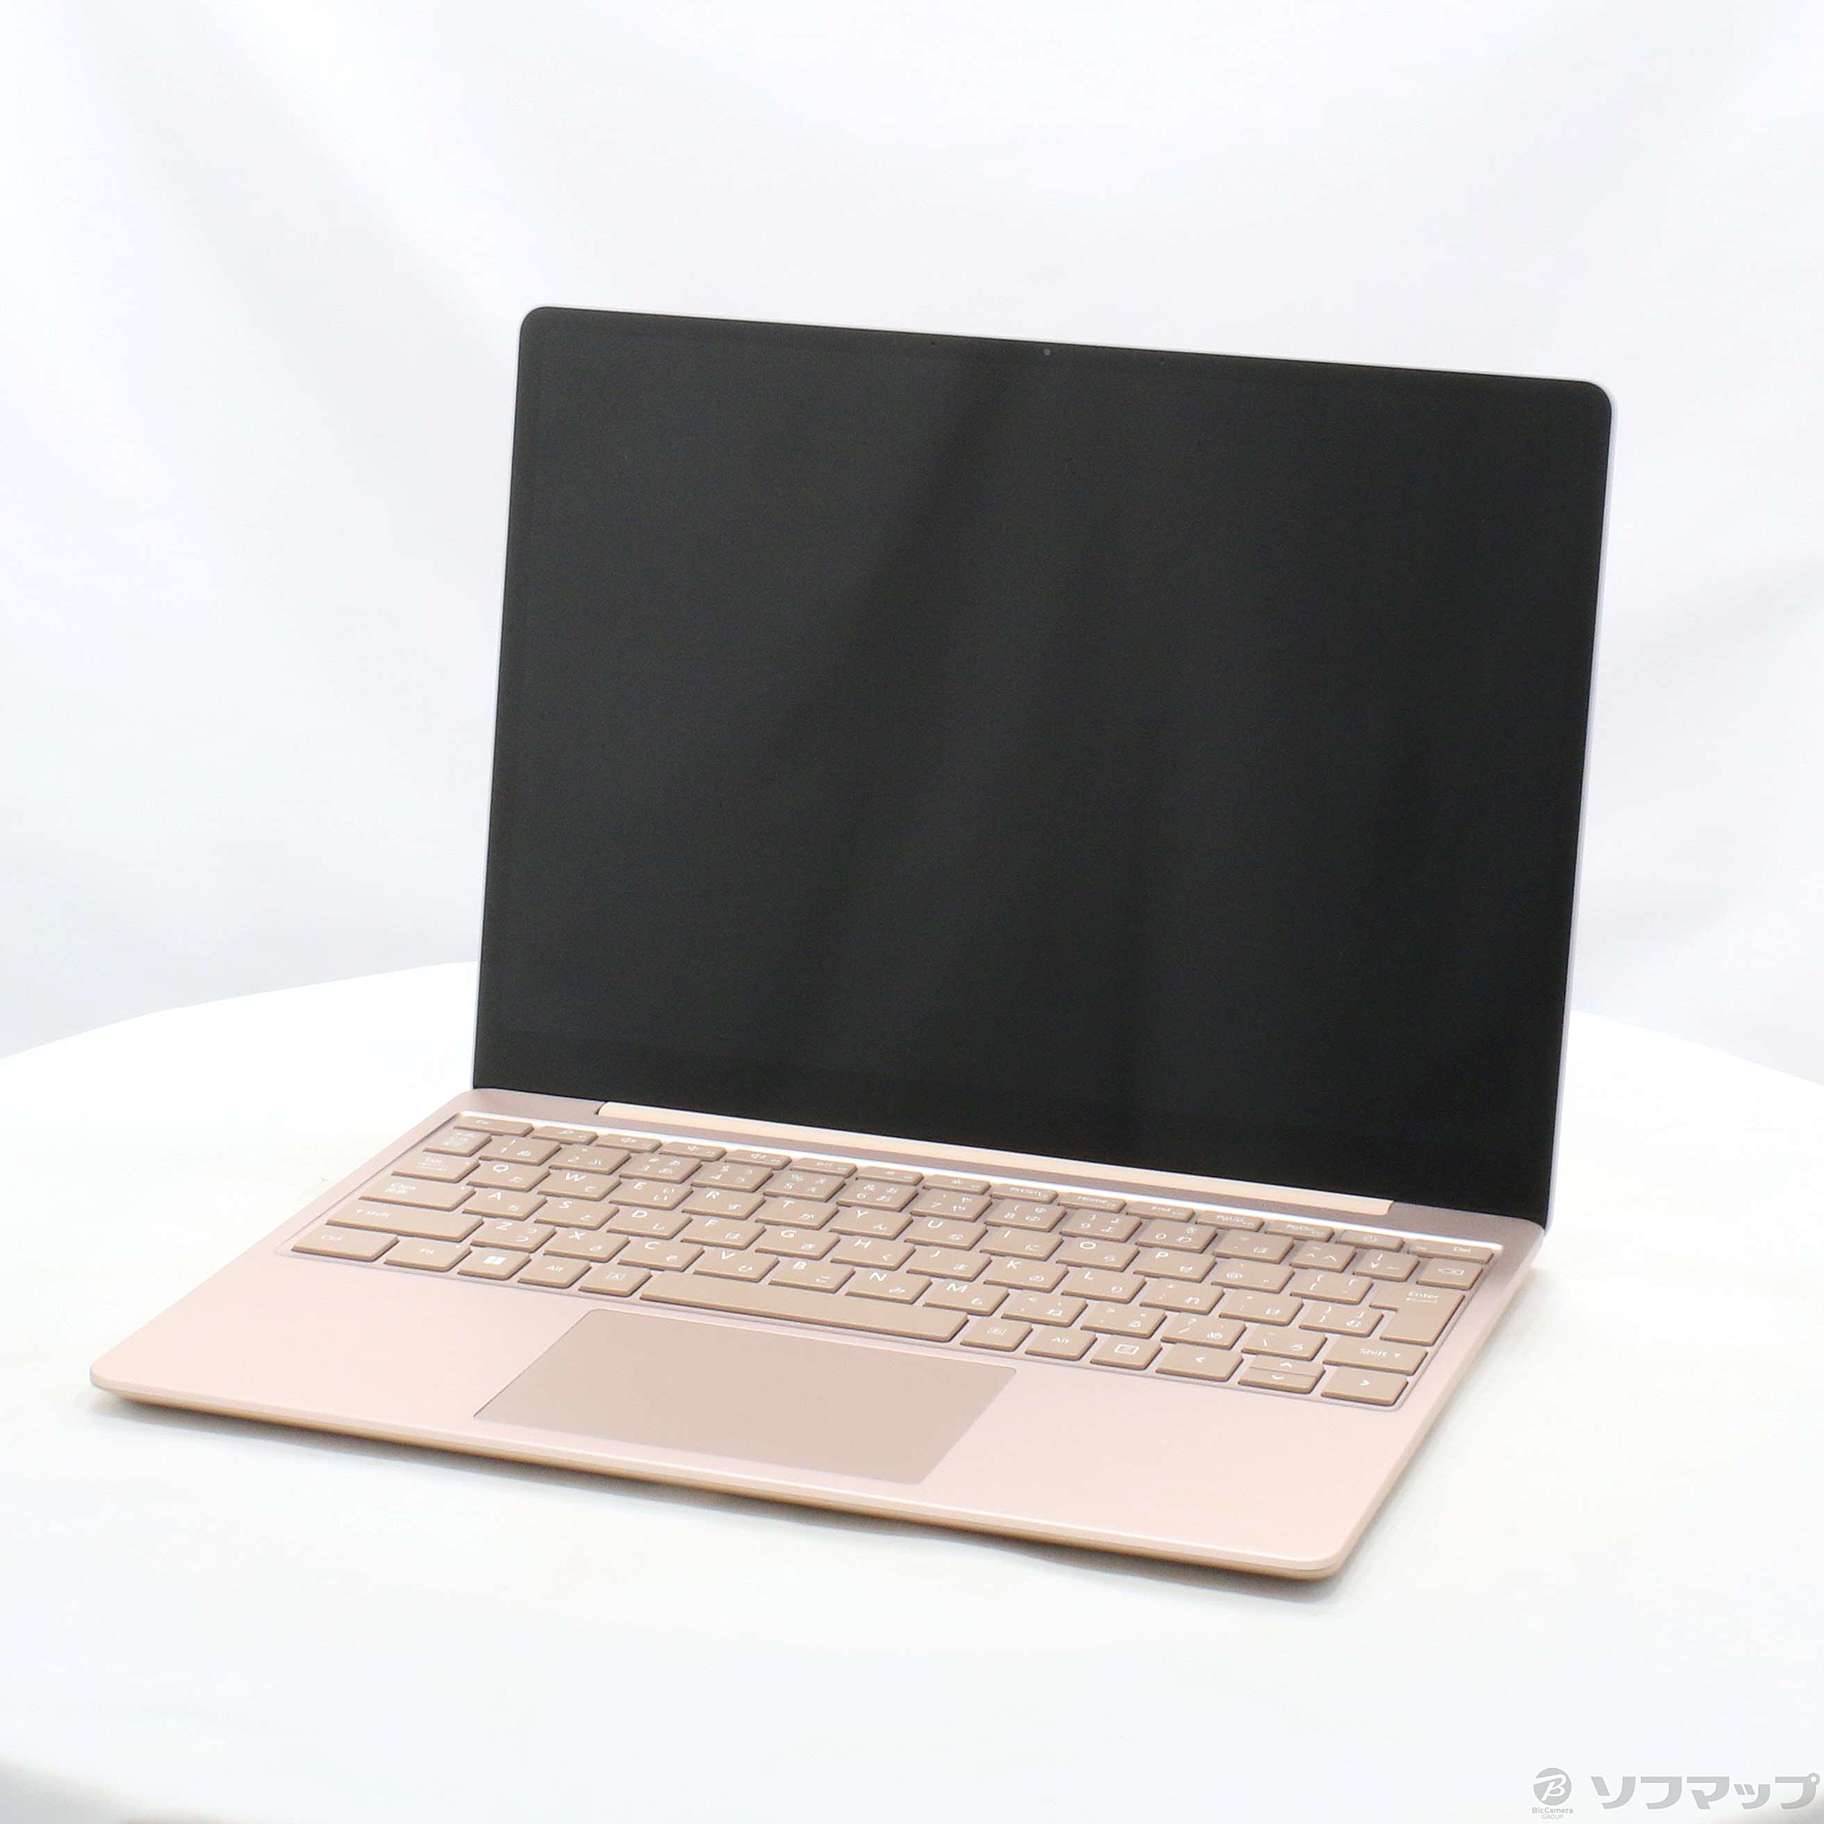 【新品未開封】Surface Laptop Go 2 8QC-00054 サンド